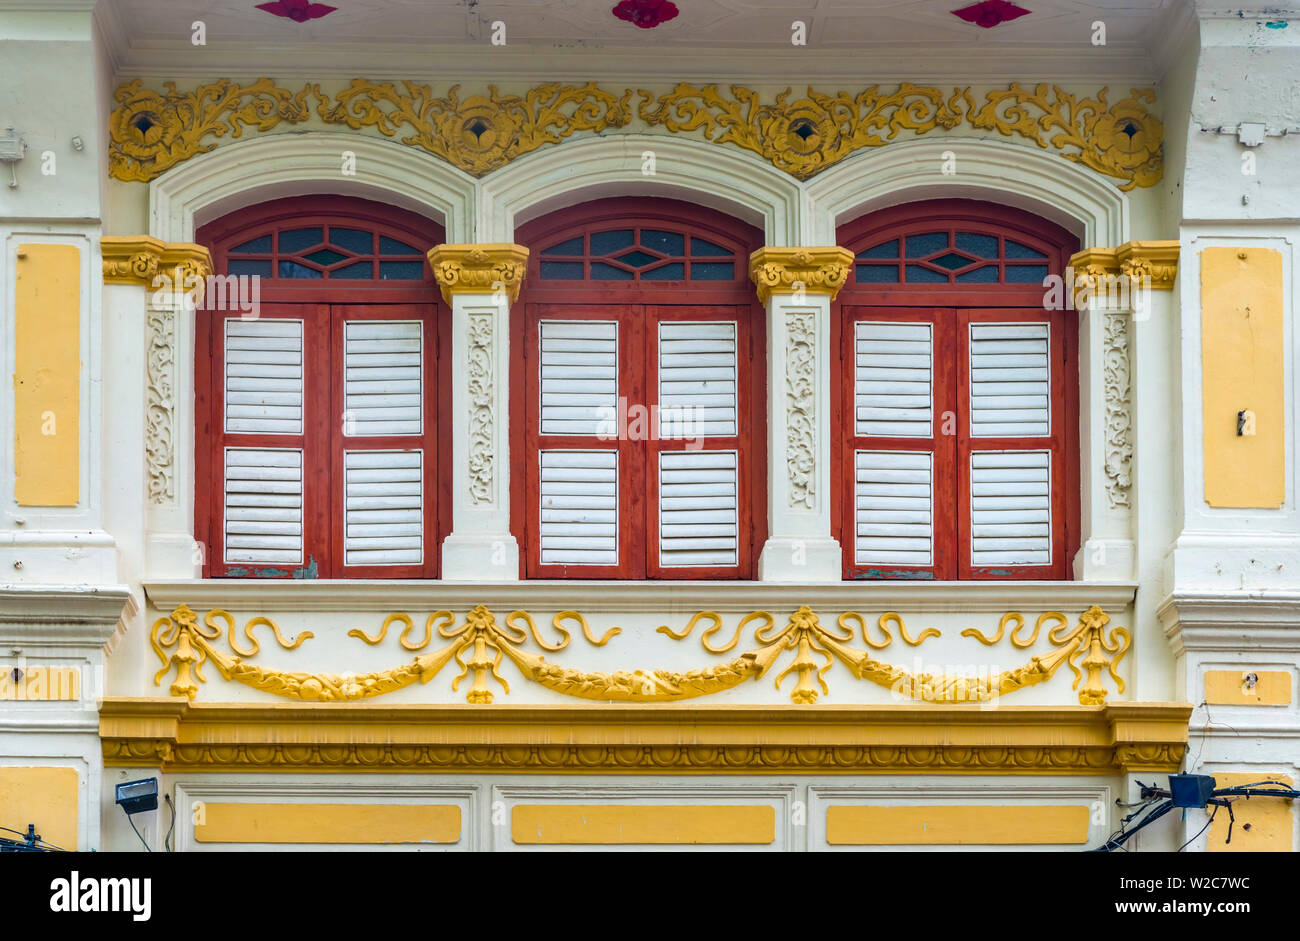 La Malaisie, Penang, Georgetown, fenêtres à volets Banque D'Images